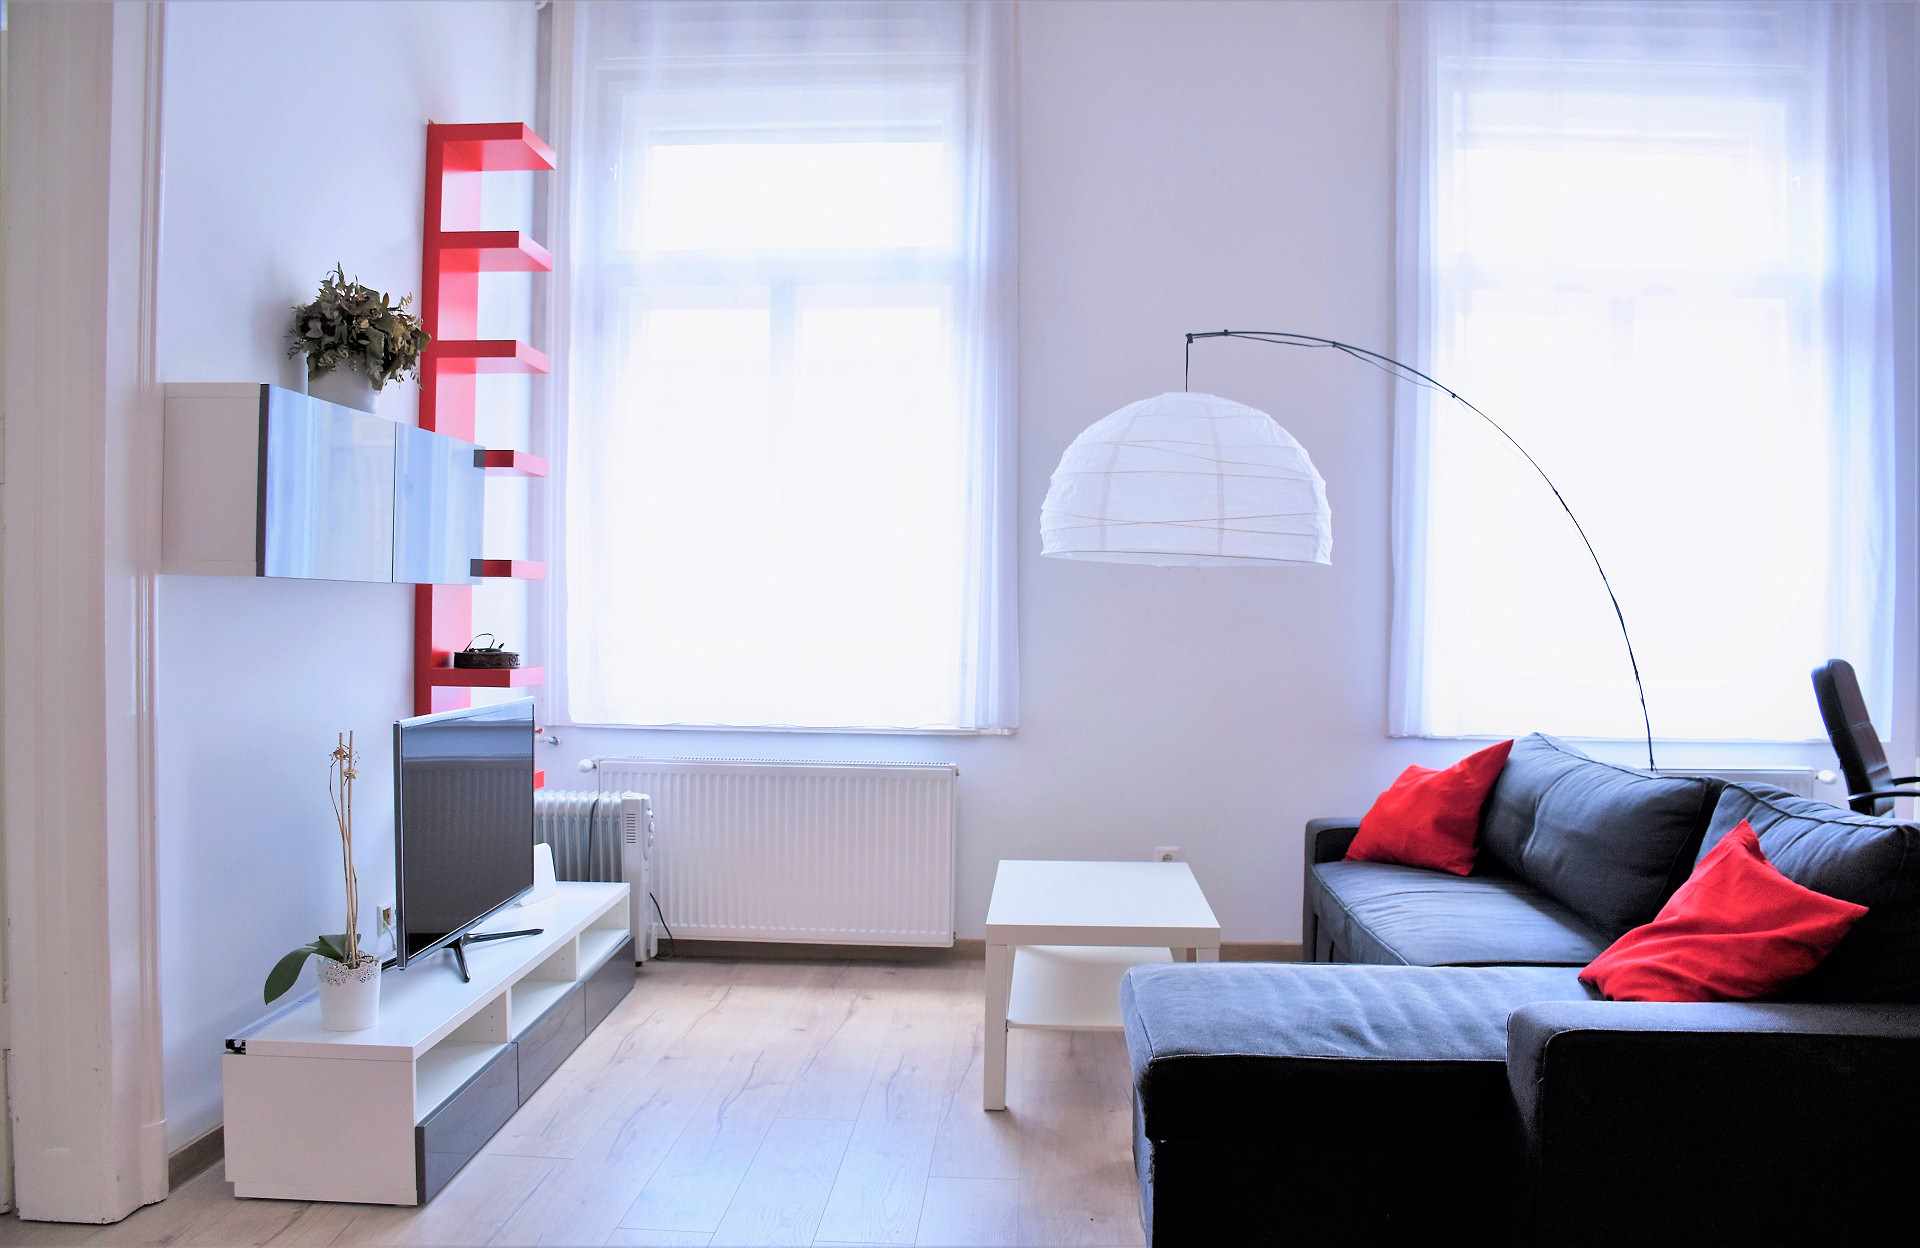 budapestrental-near-deak-1-bedroom-apartment-for-rent2-1